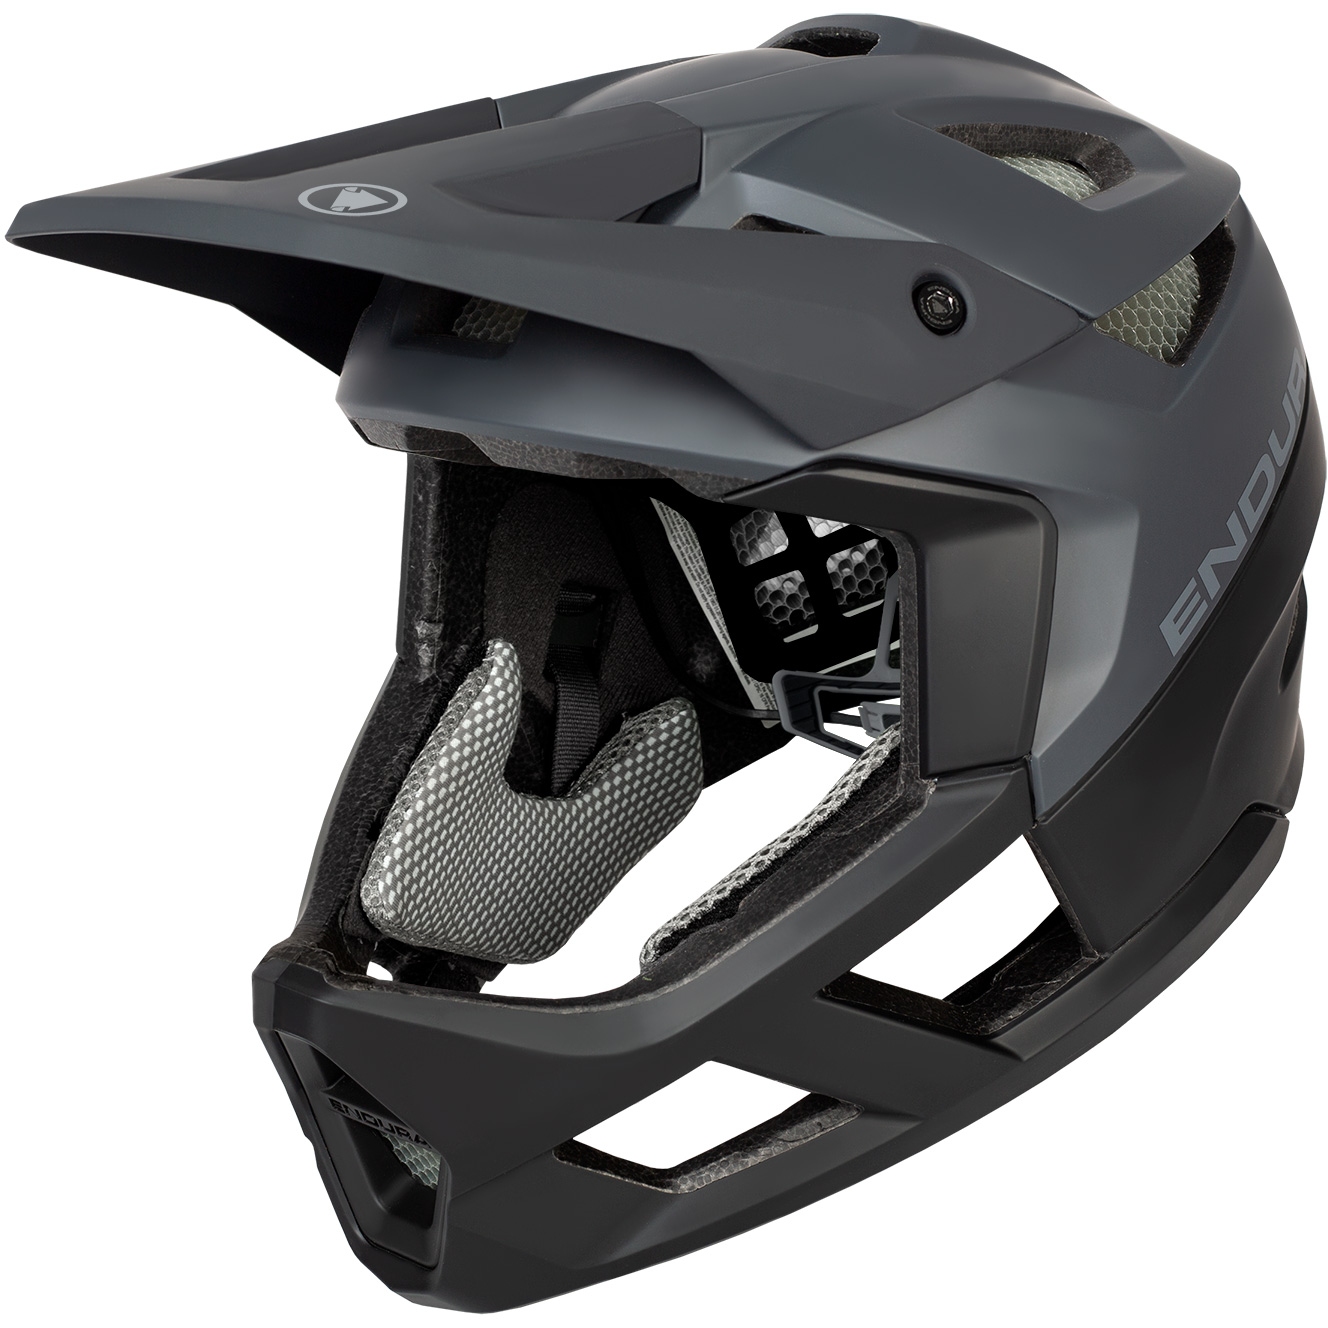 Bild von Endura MT500 MIPS Full Face Helm - schwarz